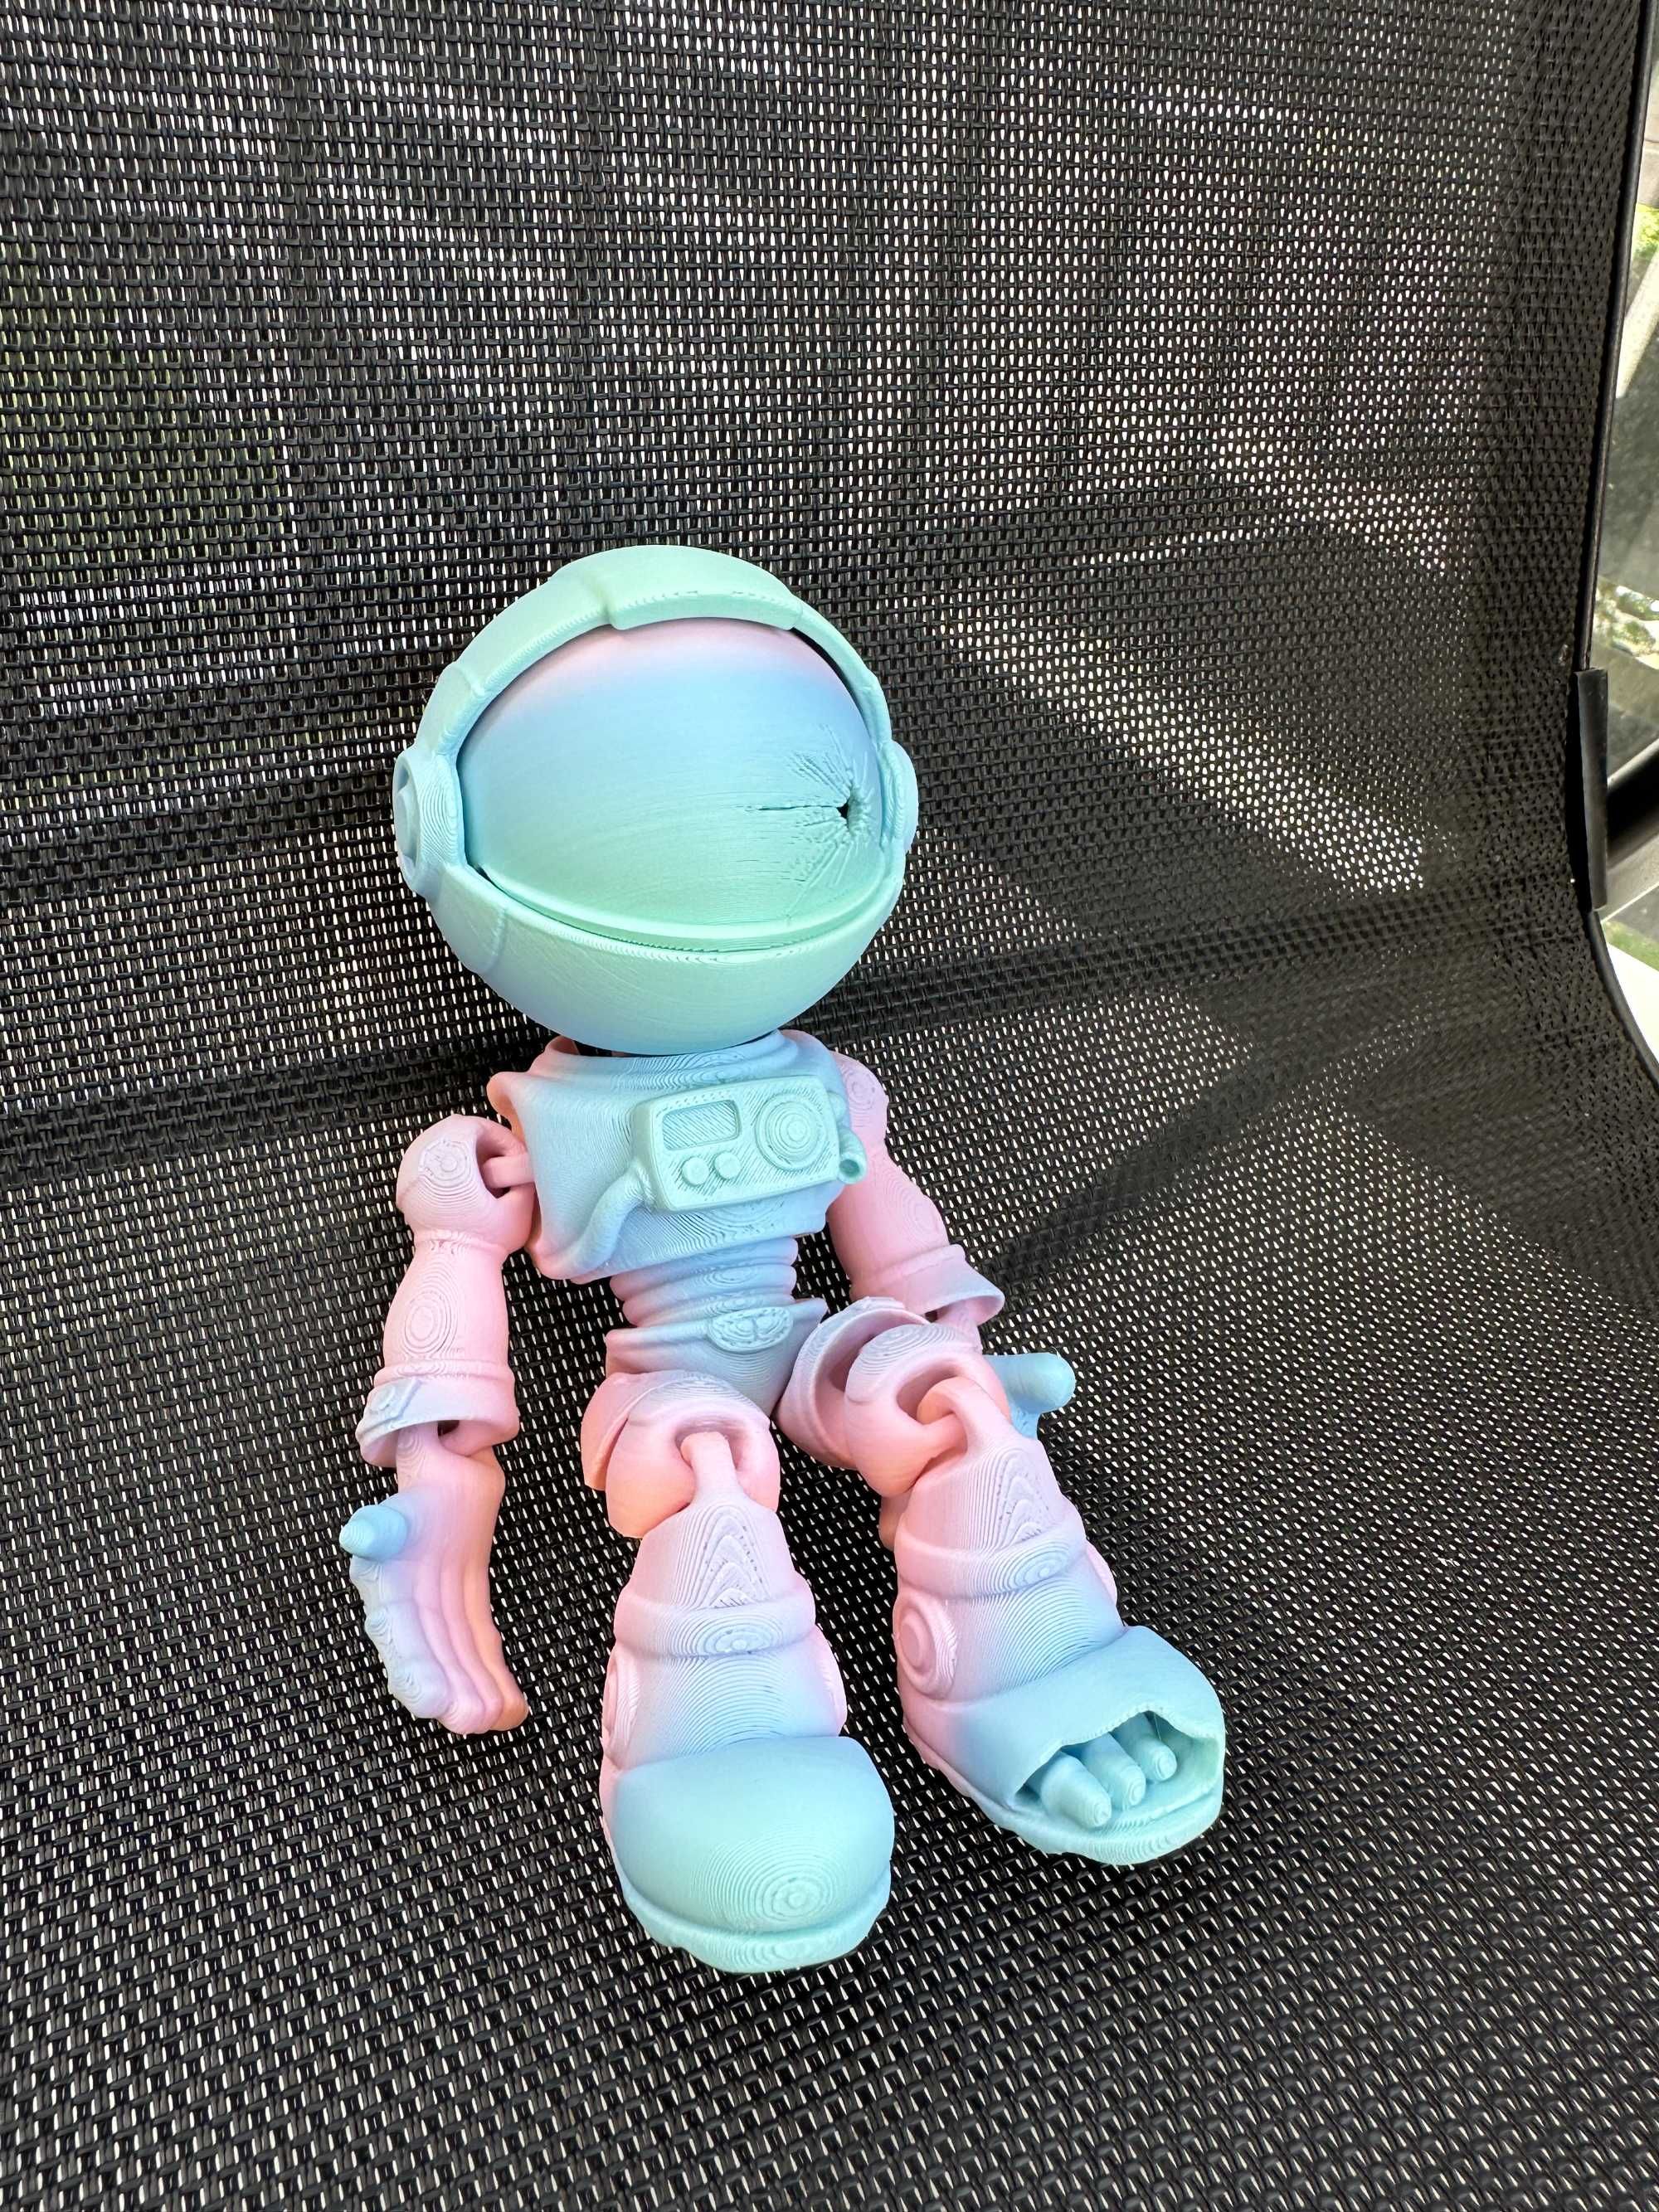 Astronauta kosmita szkielet ruchoma figurka antystresowa 18 cm tiktok